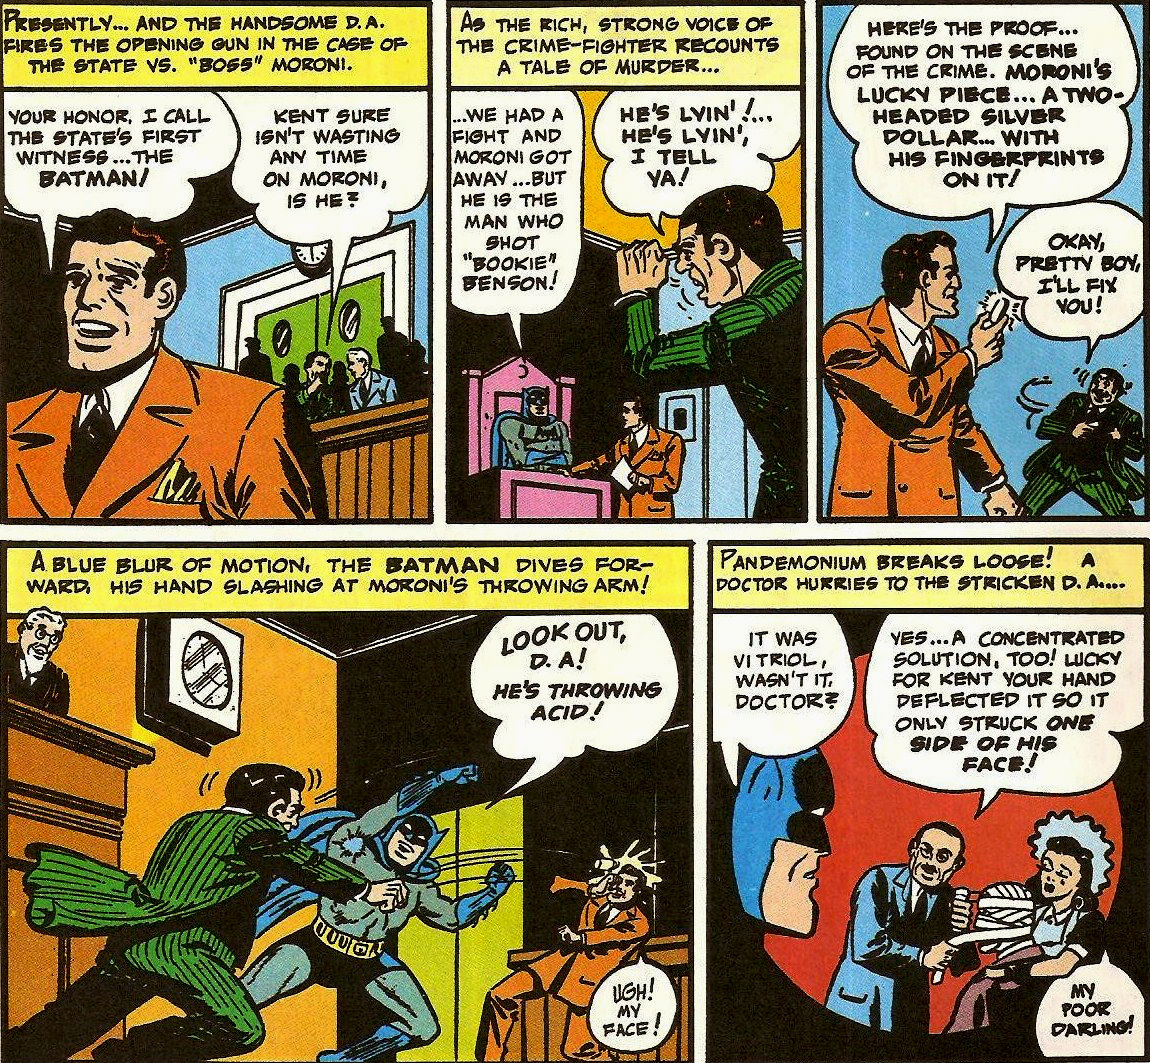 From Detective Comics (Vol. 1) #66 (1942)